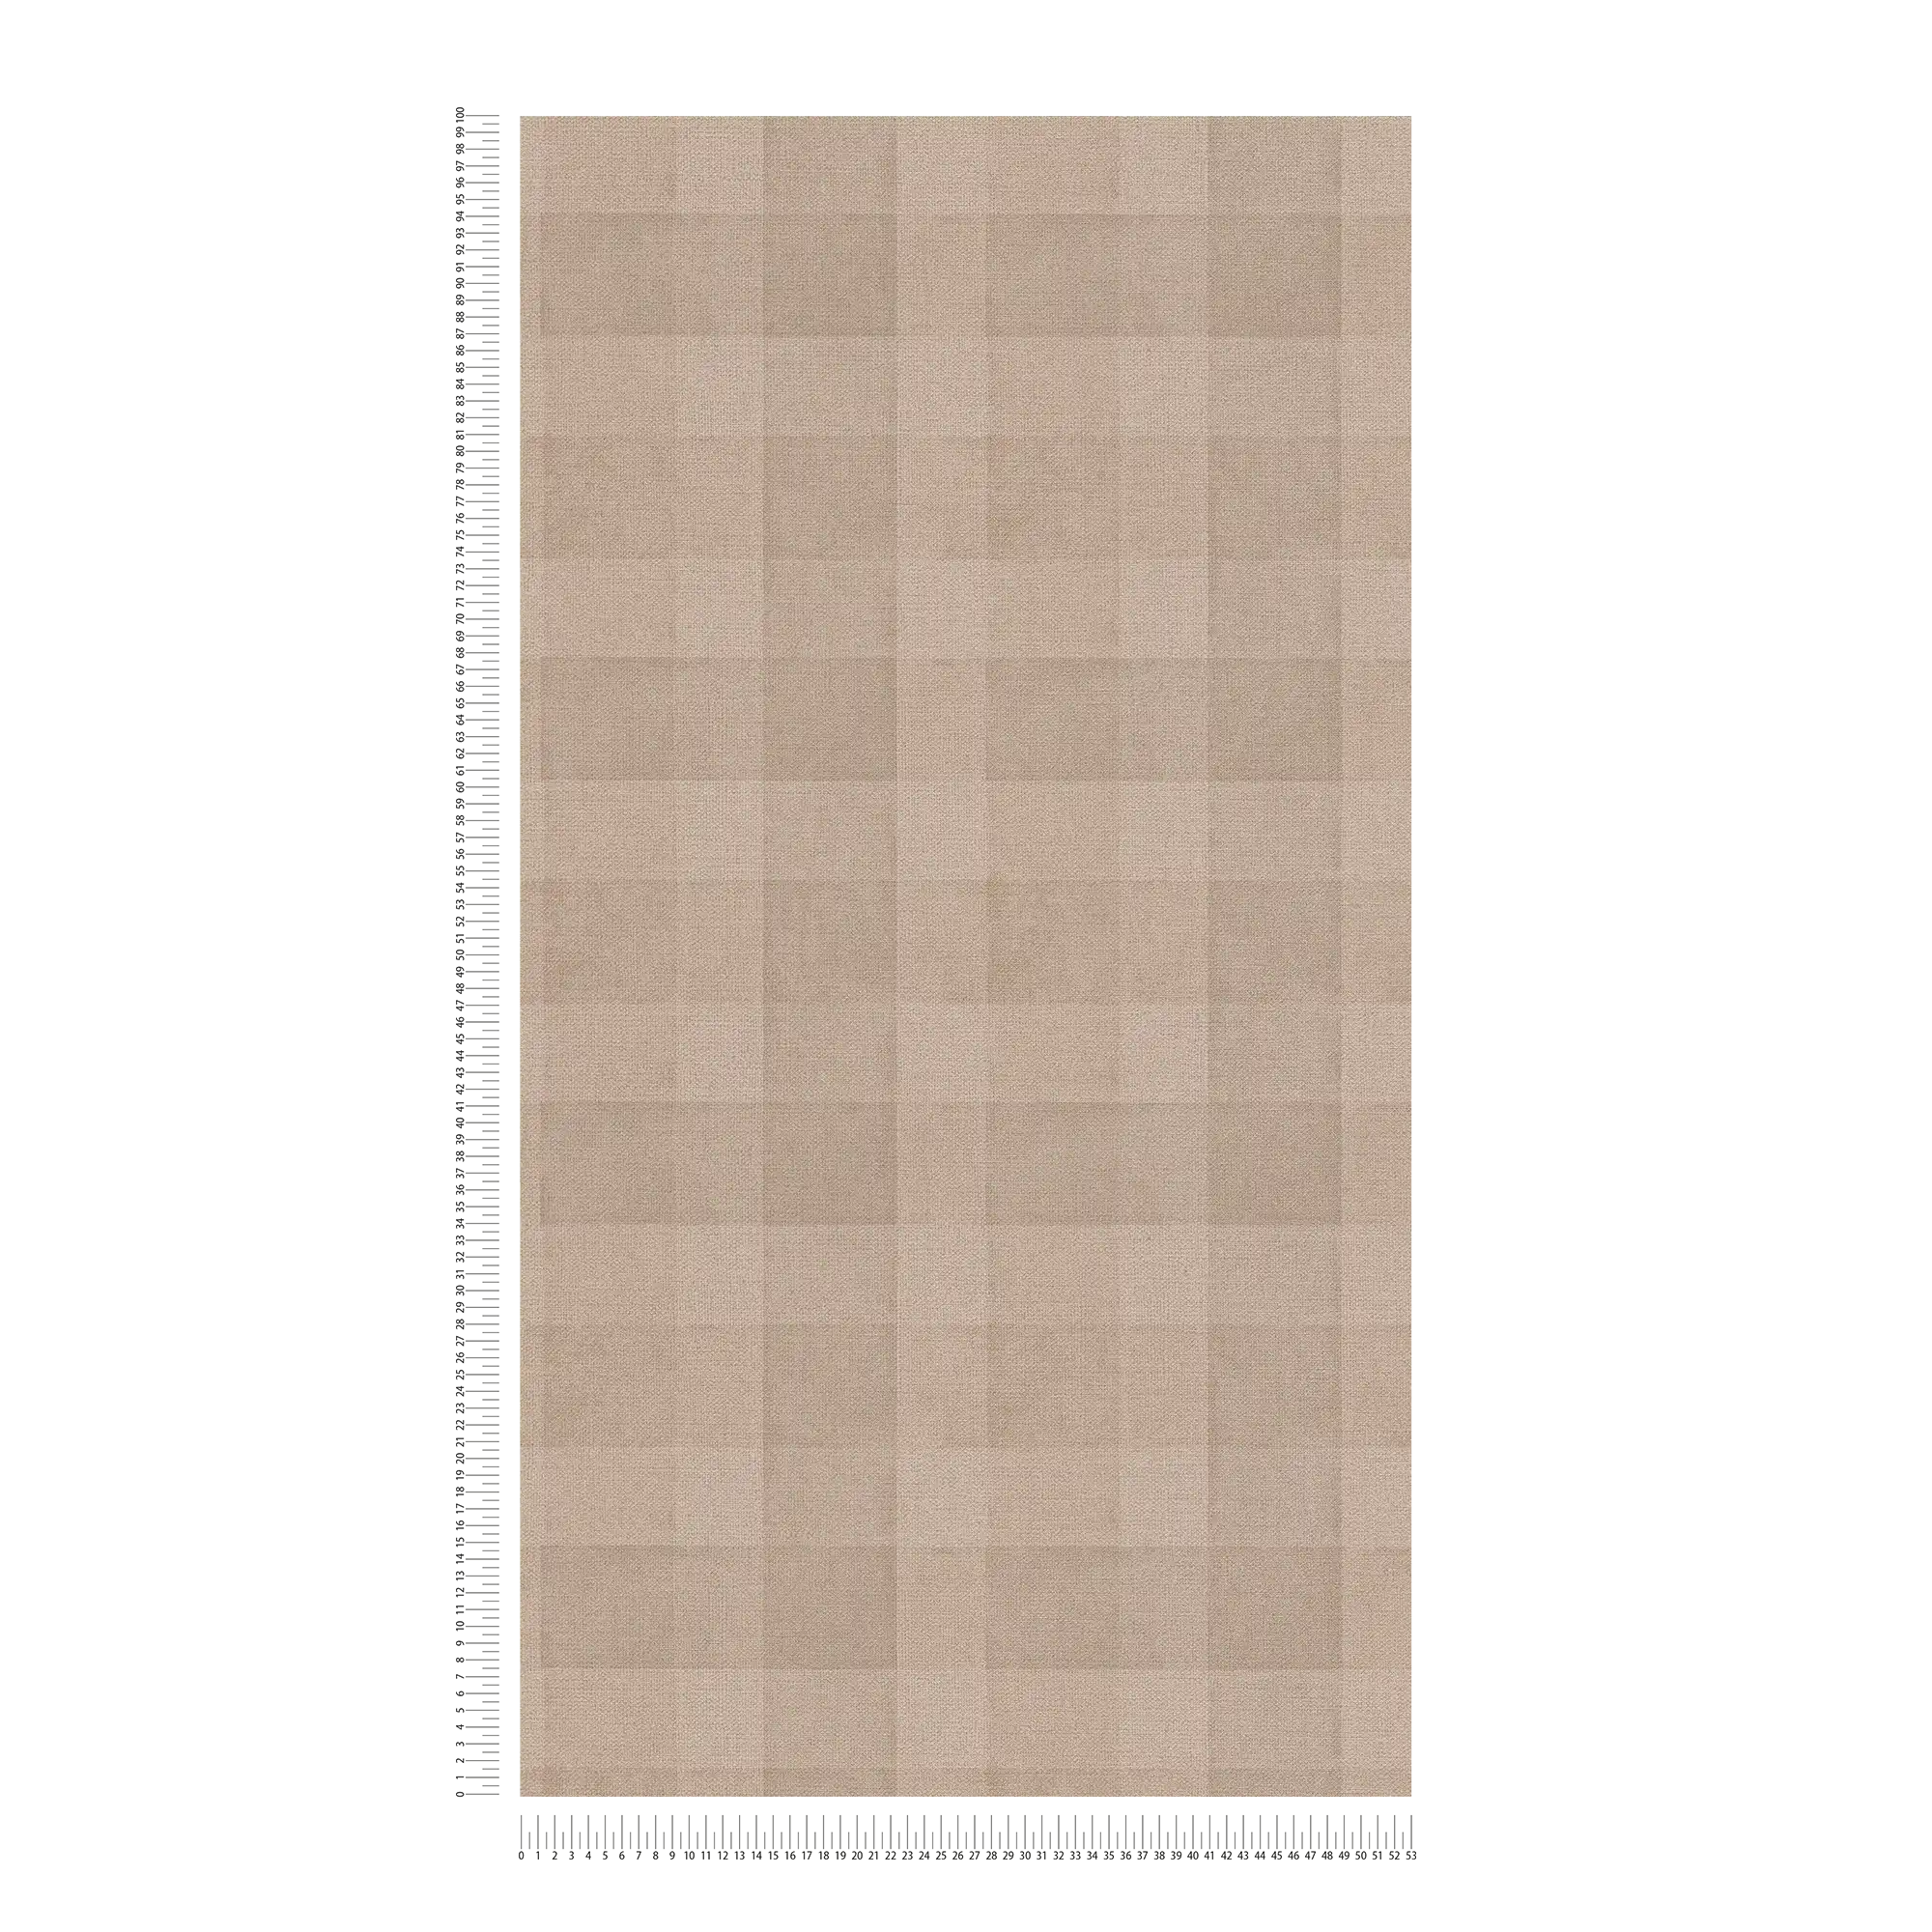             Carta da parati in tessuto non tessuto con motivo a quadri e aspetto lino Senza PVC - marrone
        